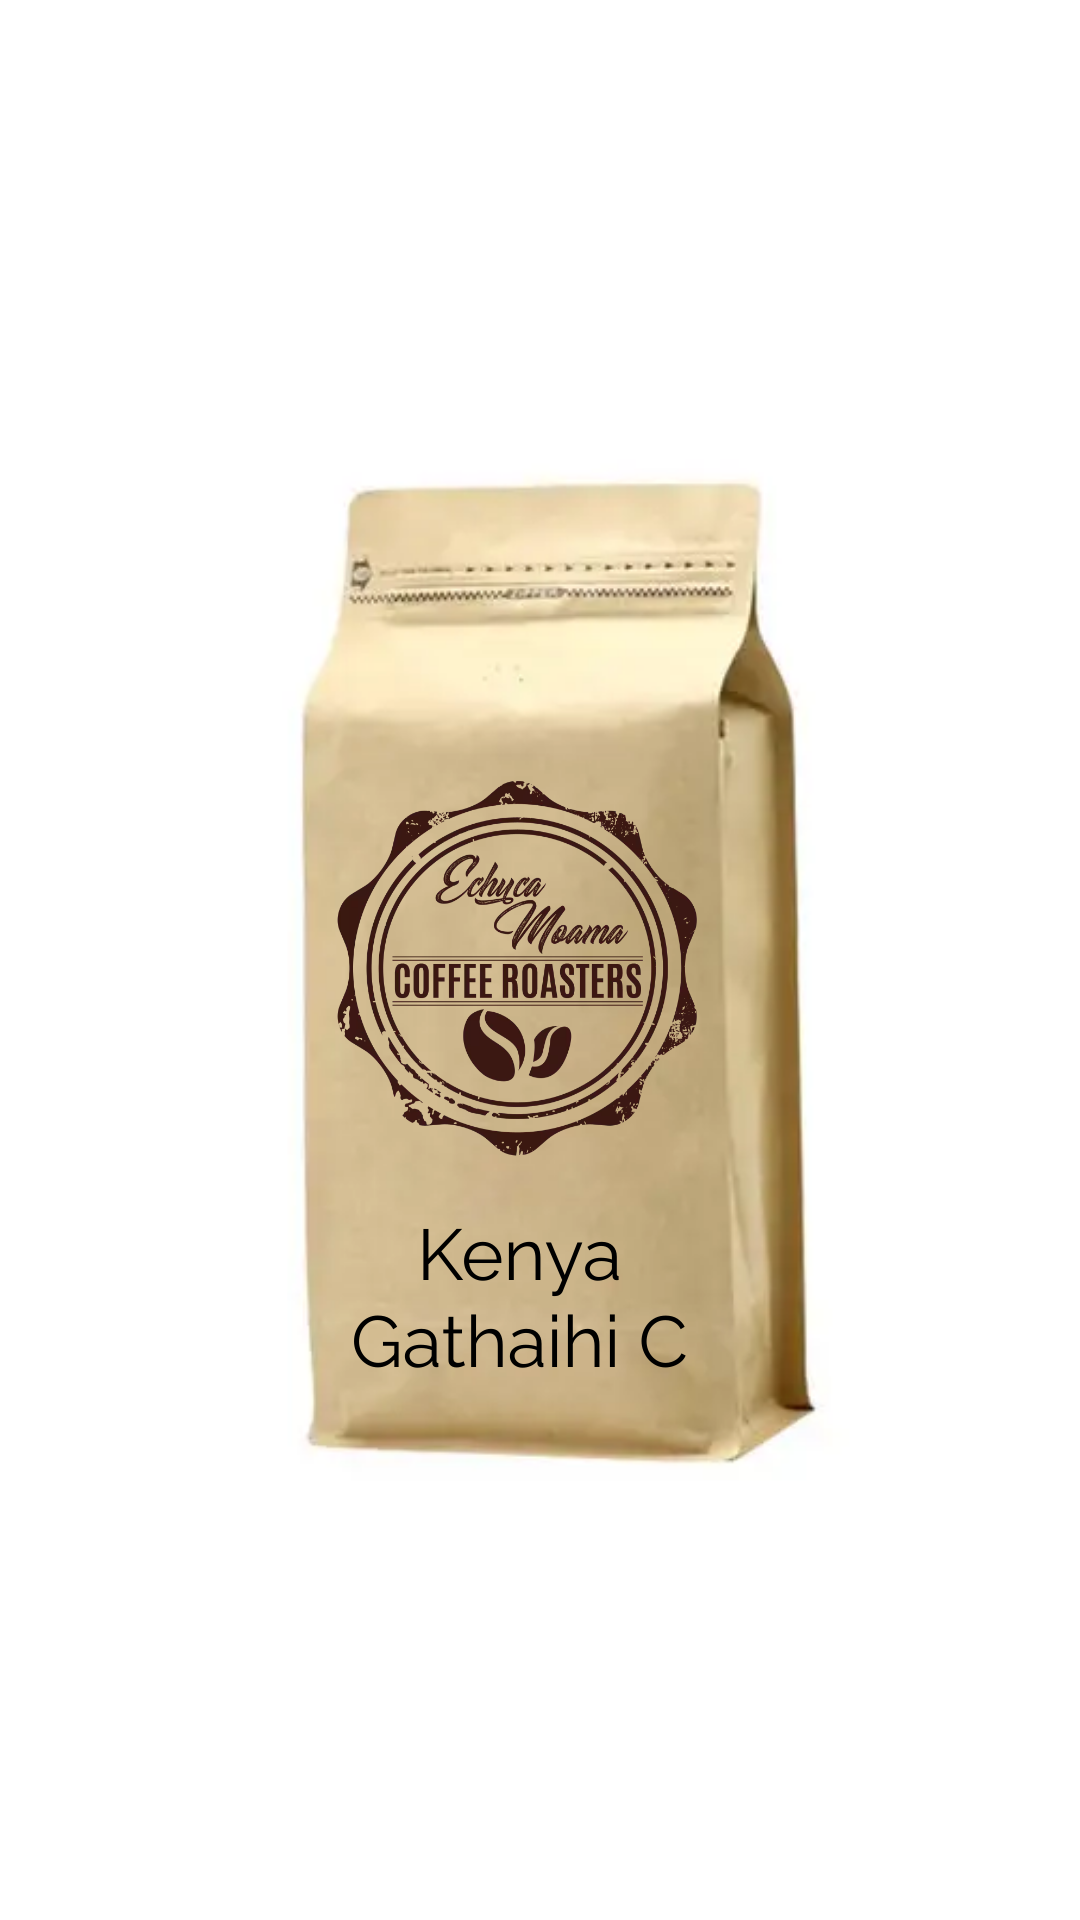 Kenya Gathaithi C